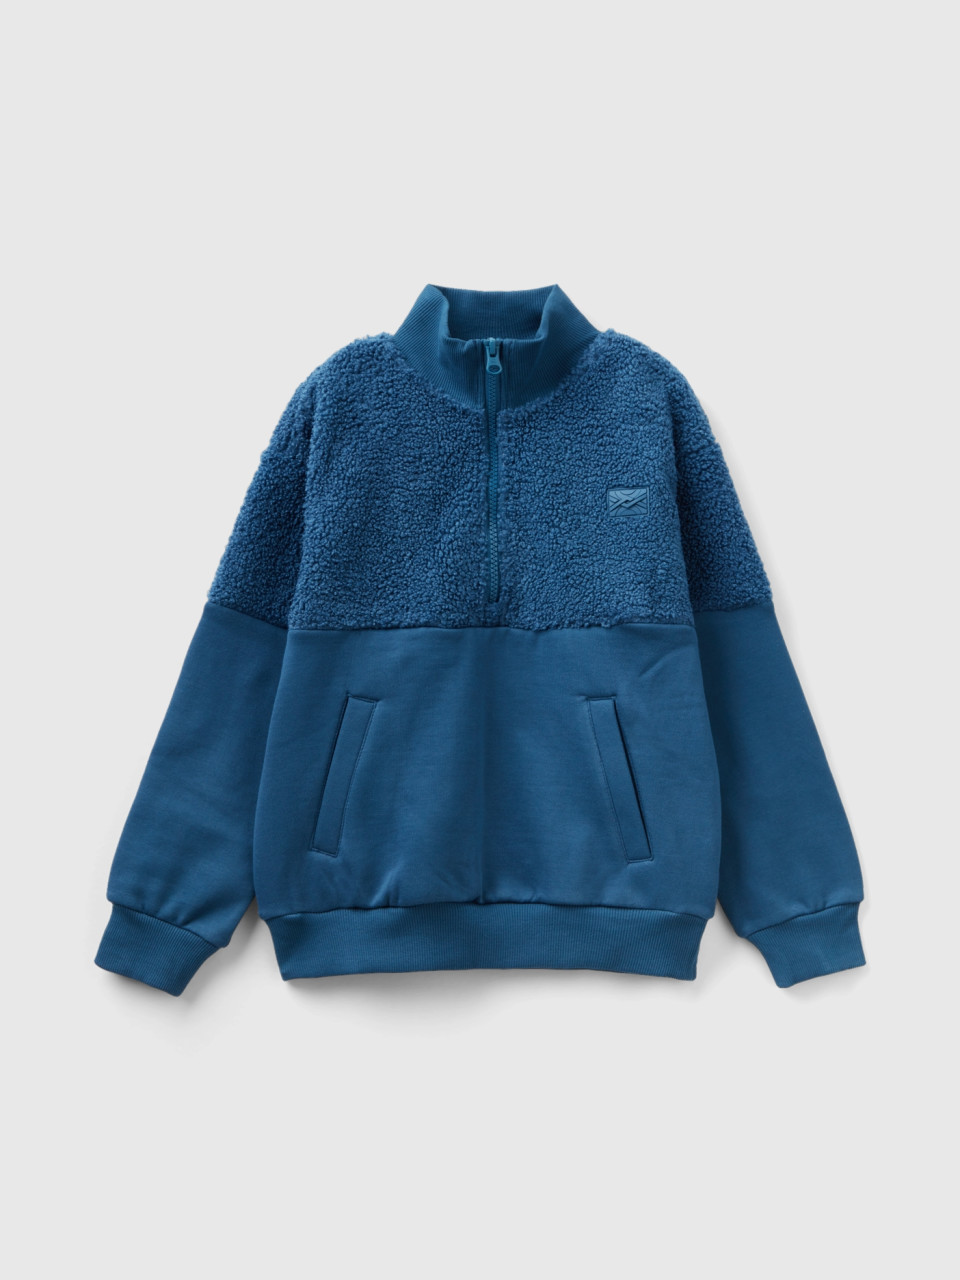 Benetton, Warmes Sweatshirt Mit Kurzem Reißverschluss, Taubenblau, male